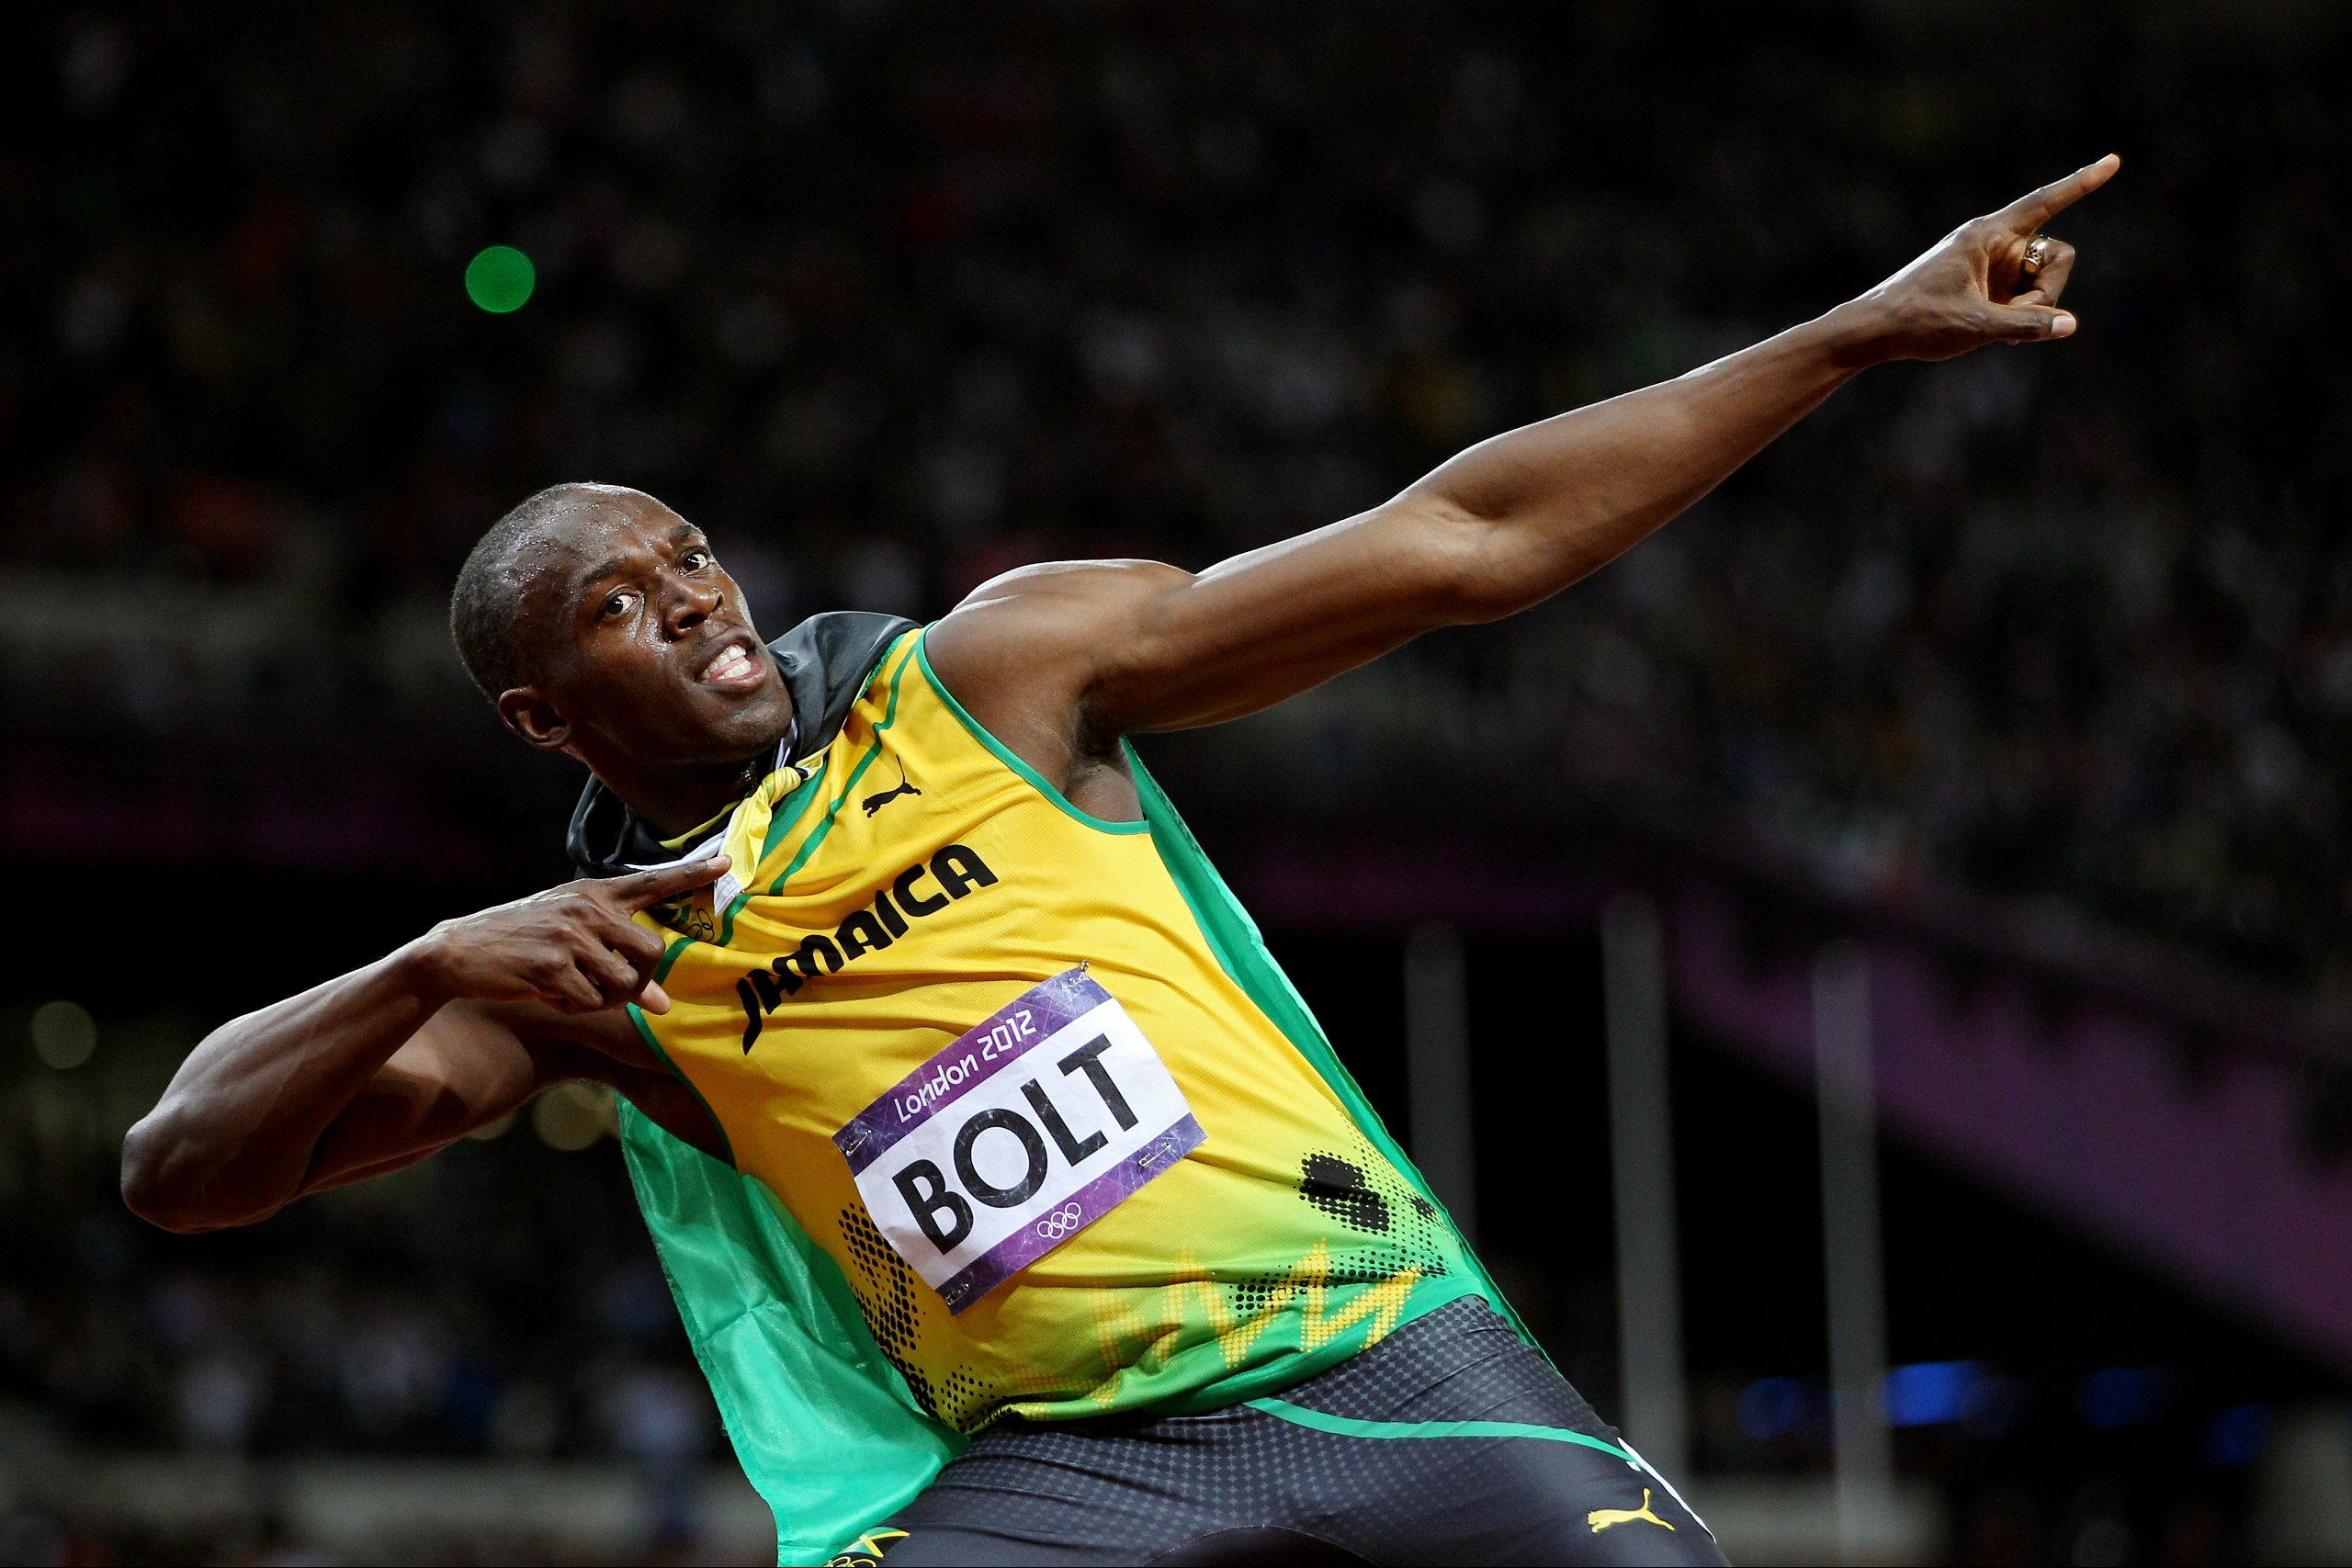 Gold über 100m! Usain Bolt bleibt der schnellste Mann der Welt